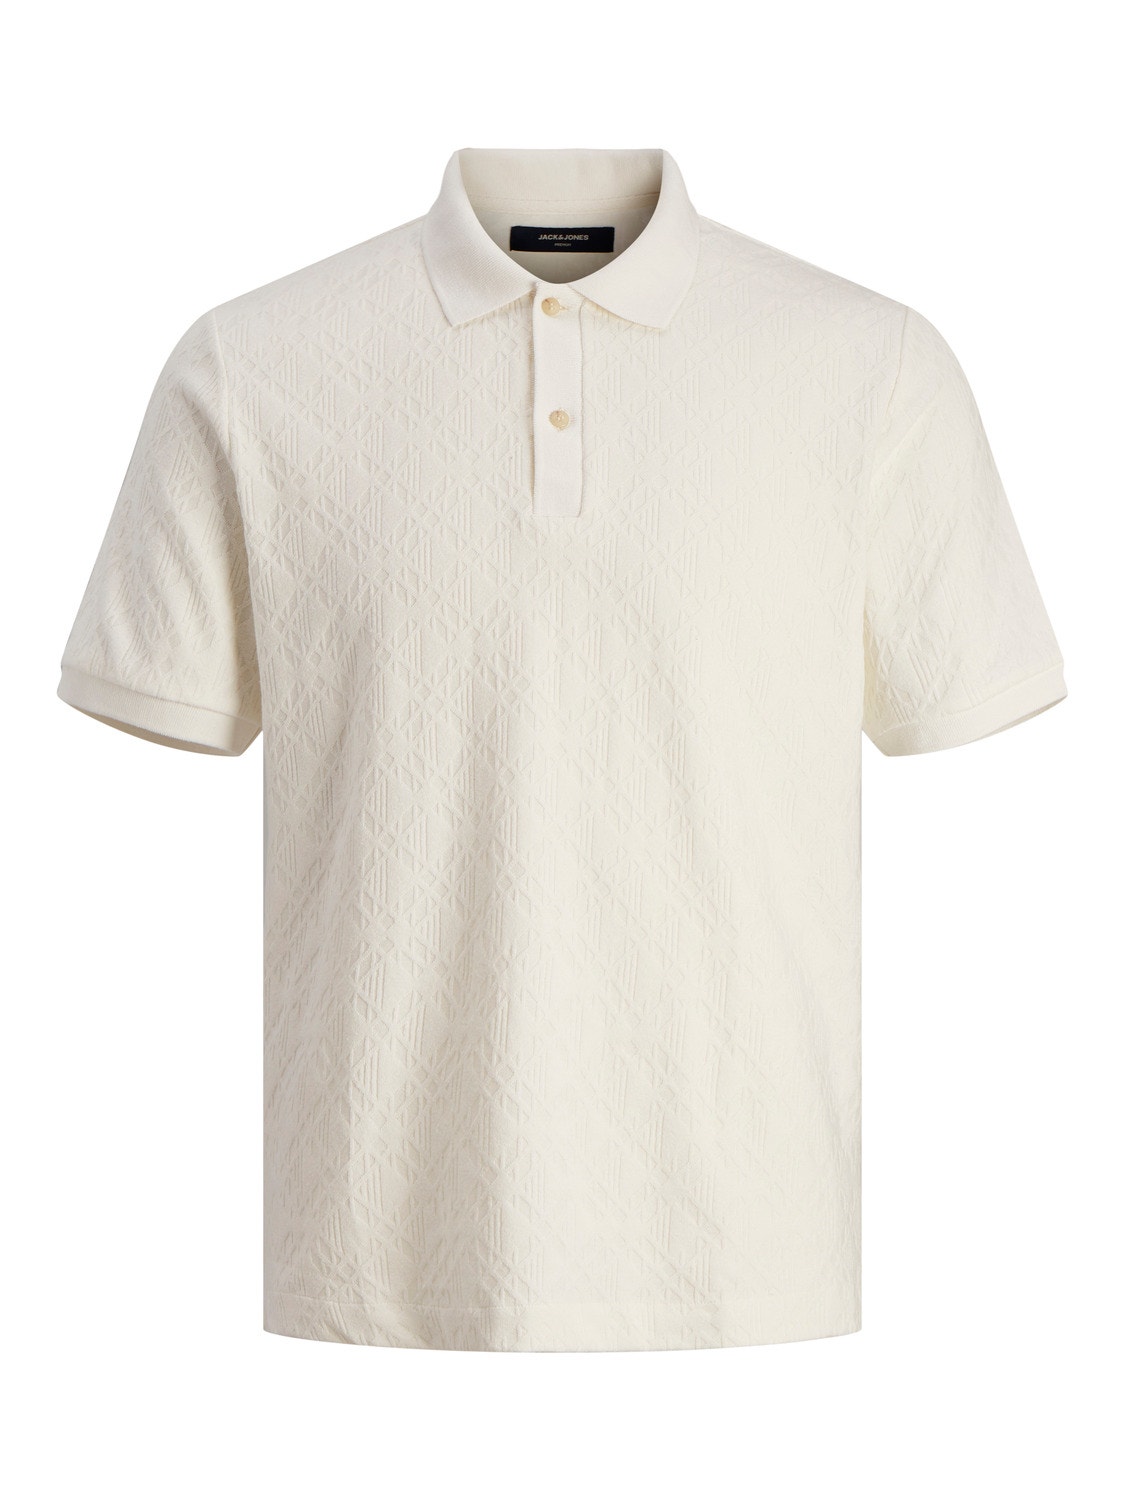 Jack & Jones Plain Polo T-shirt -White Onyx - 12255616